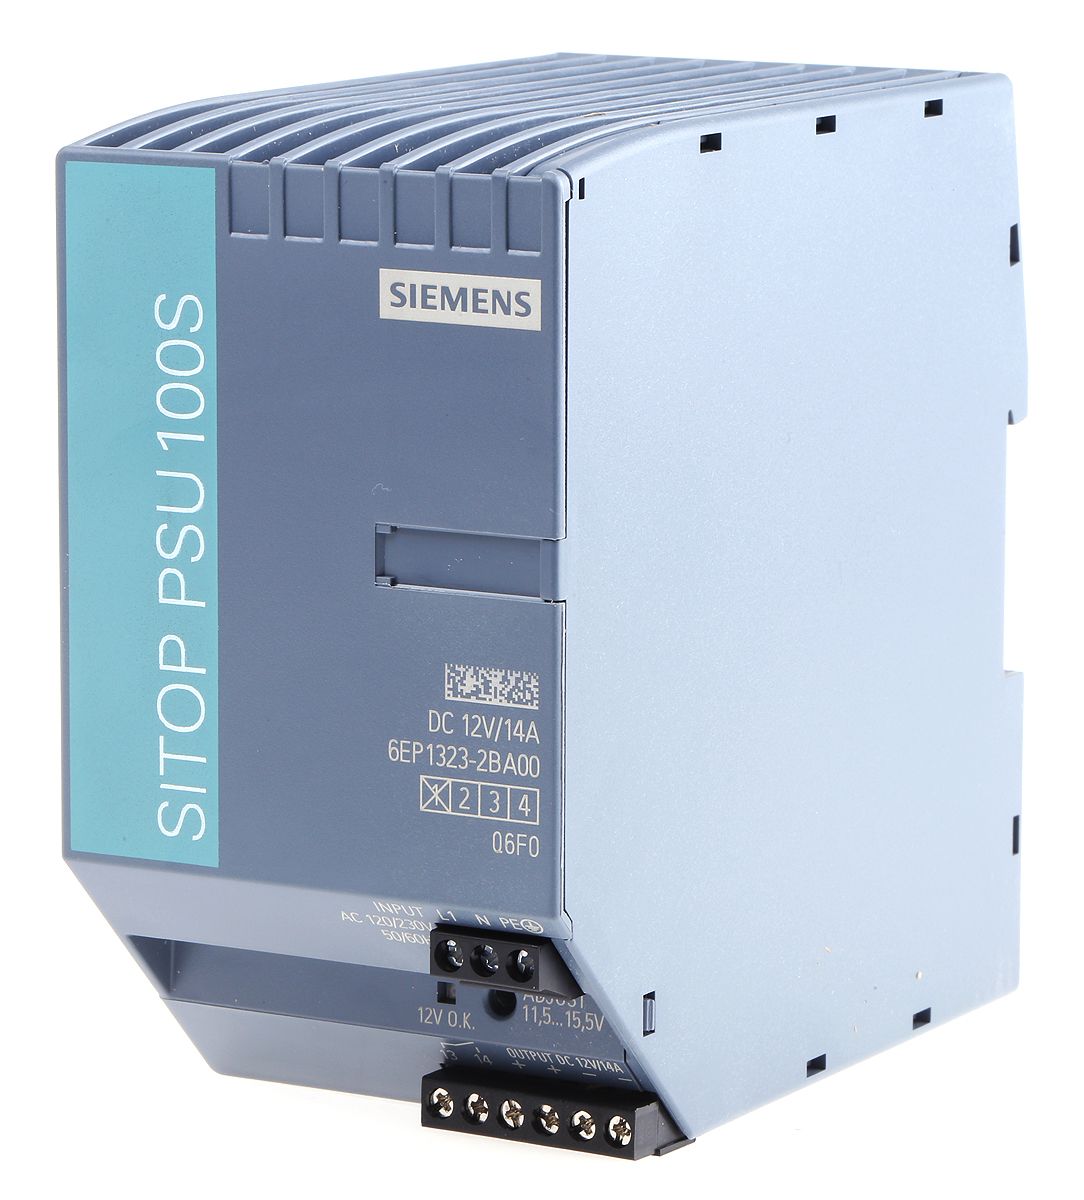 Siemens SITOP PSU100S Switch Mode DIN Rail Power Supply 85 → 132V ac Input, 12V dc Output, 14A 168W